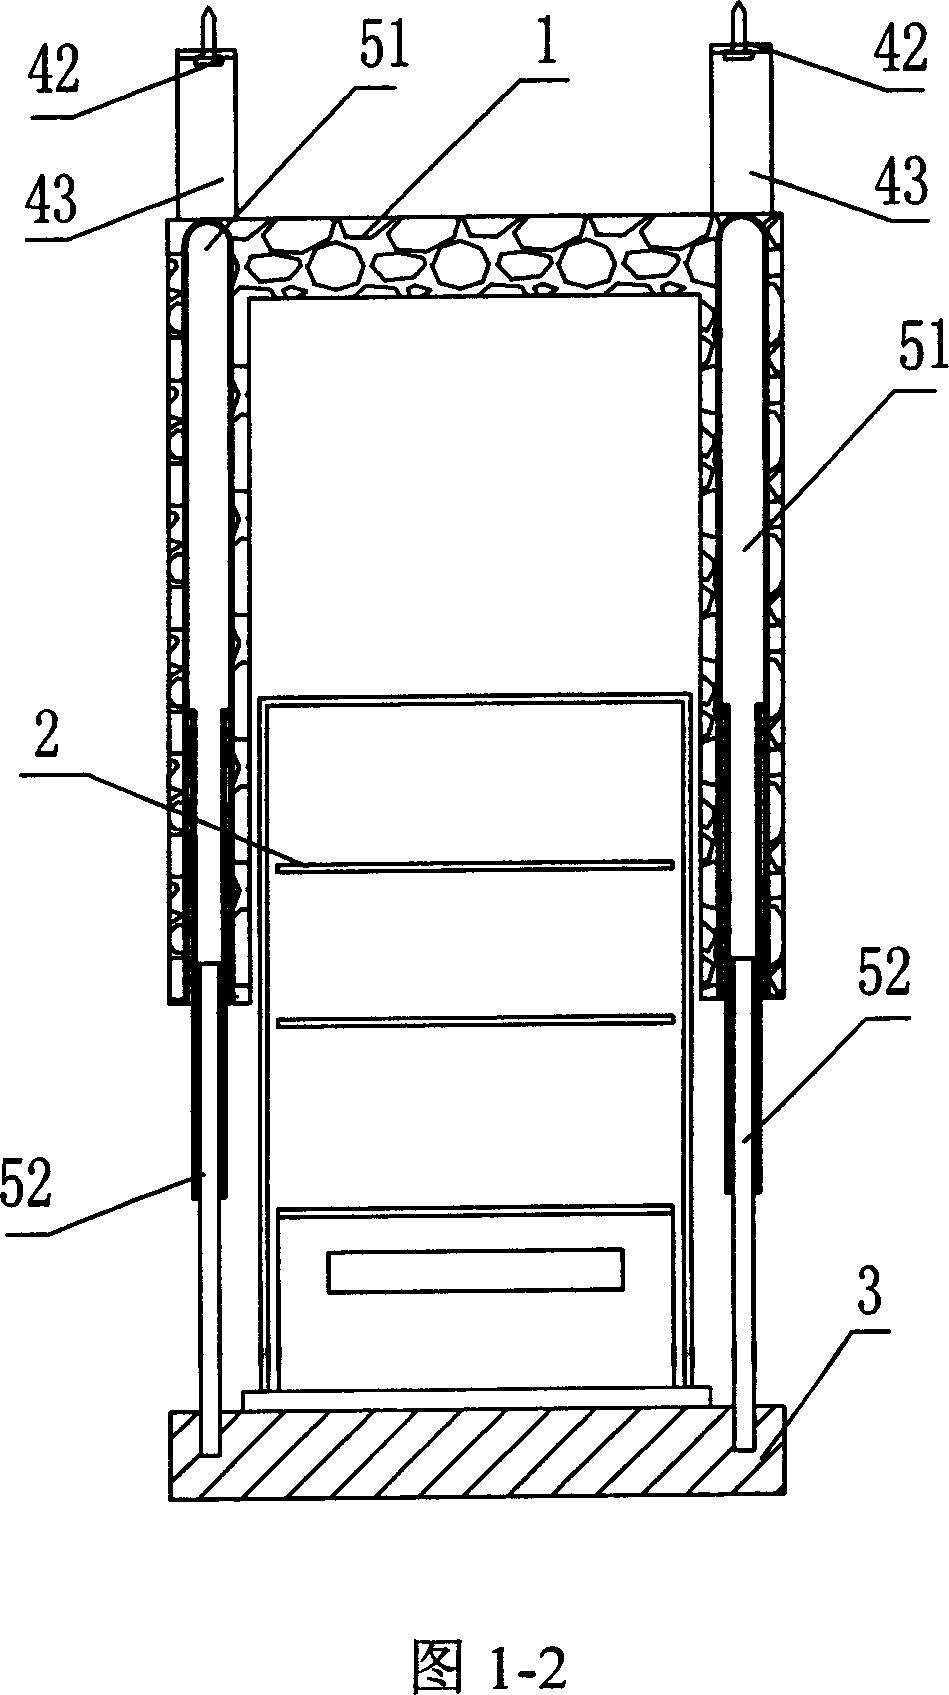 Suspended refrigerator with bottom door